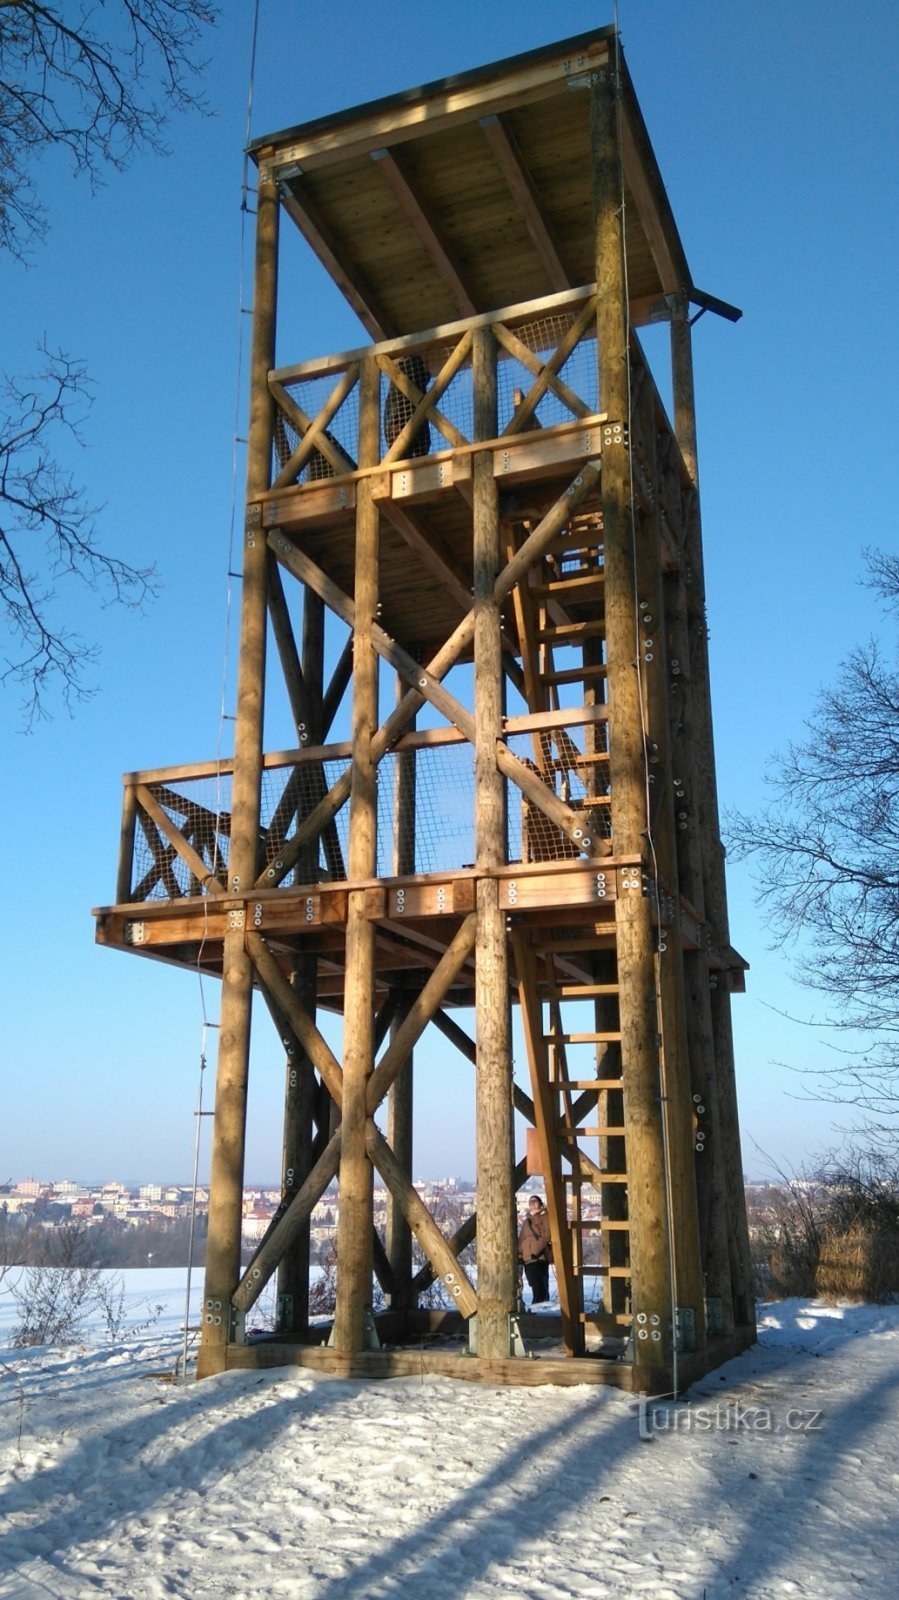 Свободно доступная смотровая башня Бабина